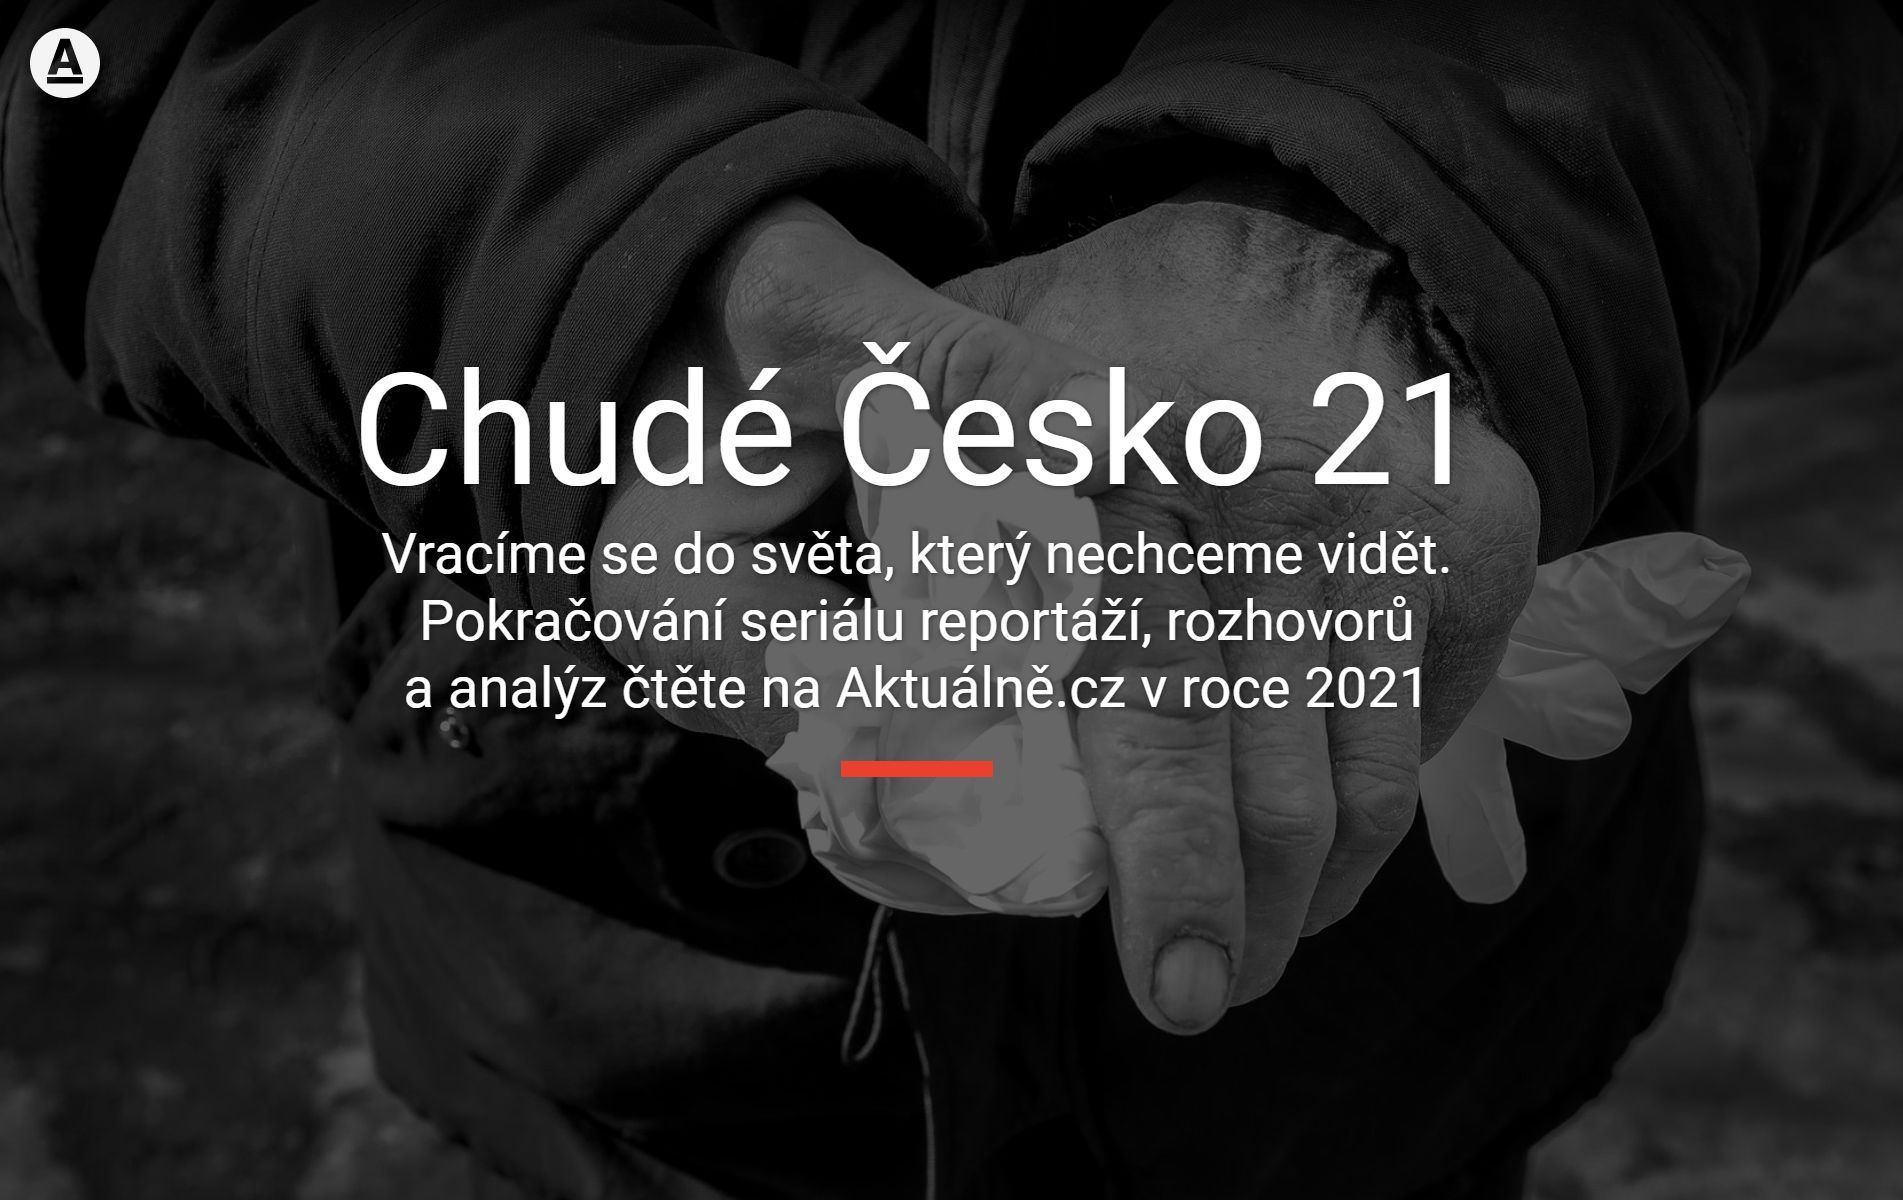 Chudé Česko 21